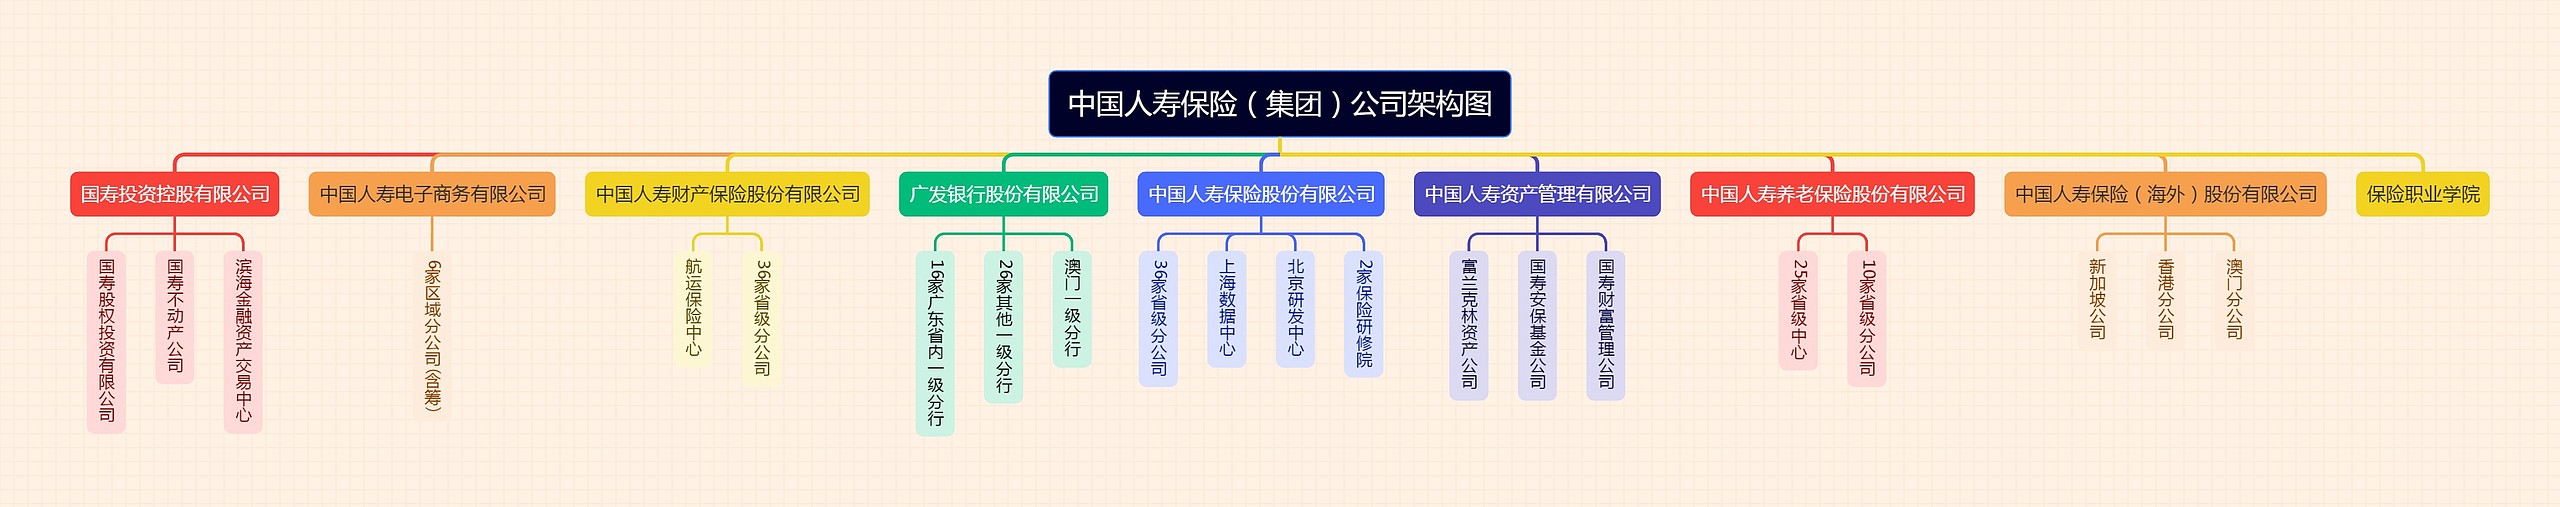 中国人寿保险（集团）公司组织架构图